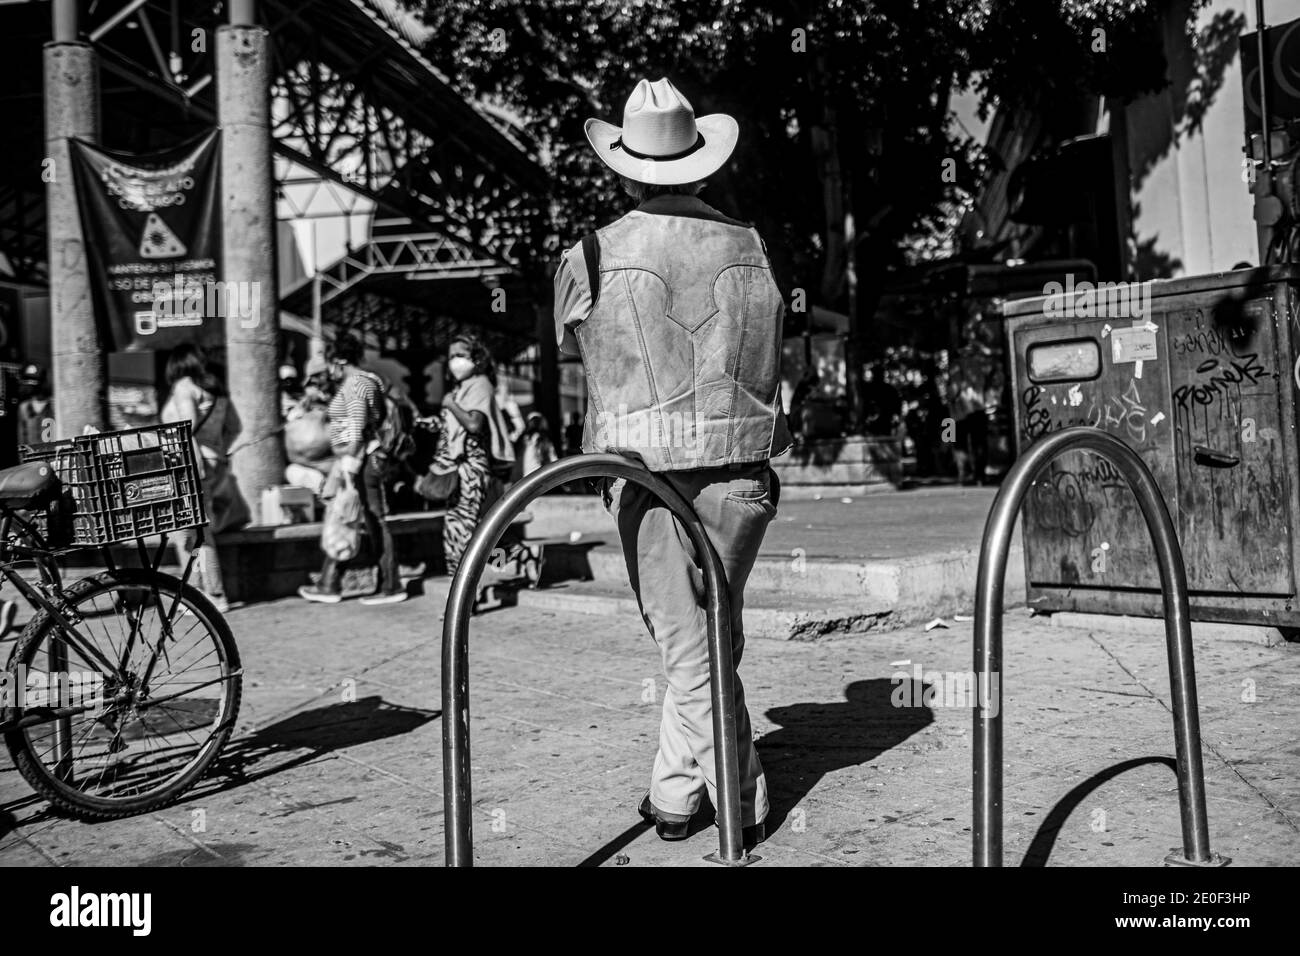 HERMOSILLO, MEXICO DECEMBER 31: A cowboy in a fur vest and hat rests leaning against the bicycle parking meter at the entrance to the Hermosillo Municipal Market. Daily life of beautiful people in the streets of the city center during the last day of the year, on December 31, 2020 in Hermosillo, Mexico .. (Photo by Luis Gutierrez / Norte Photo)  HERMOSILLO, MEXICO DICIEMBRE 31: Un vaquero con chaleco de piel  y sombrero descansa recargado en el parquimetro de bicicletas en la entrada del Mercado Municipal de Hermosillo. Vida cotidiana de hermosillences en las calles del centro de la ciudad dur Stock Photo